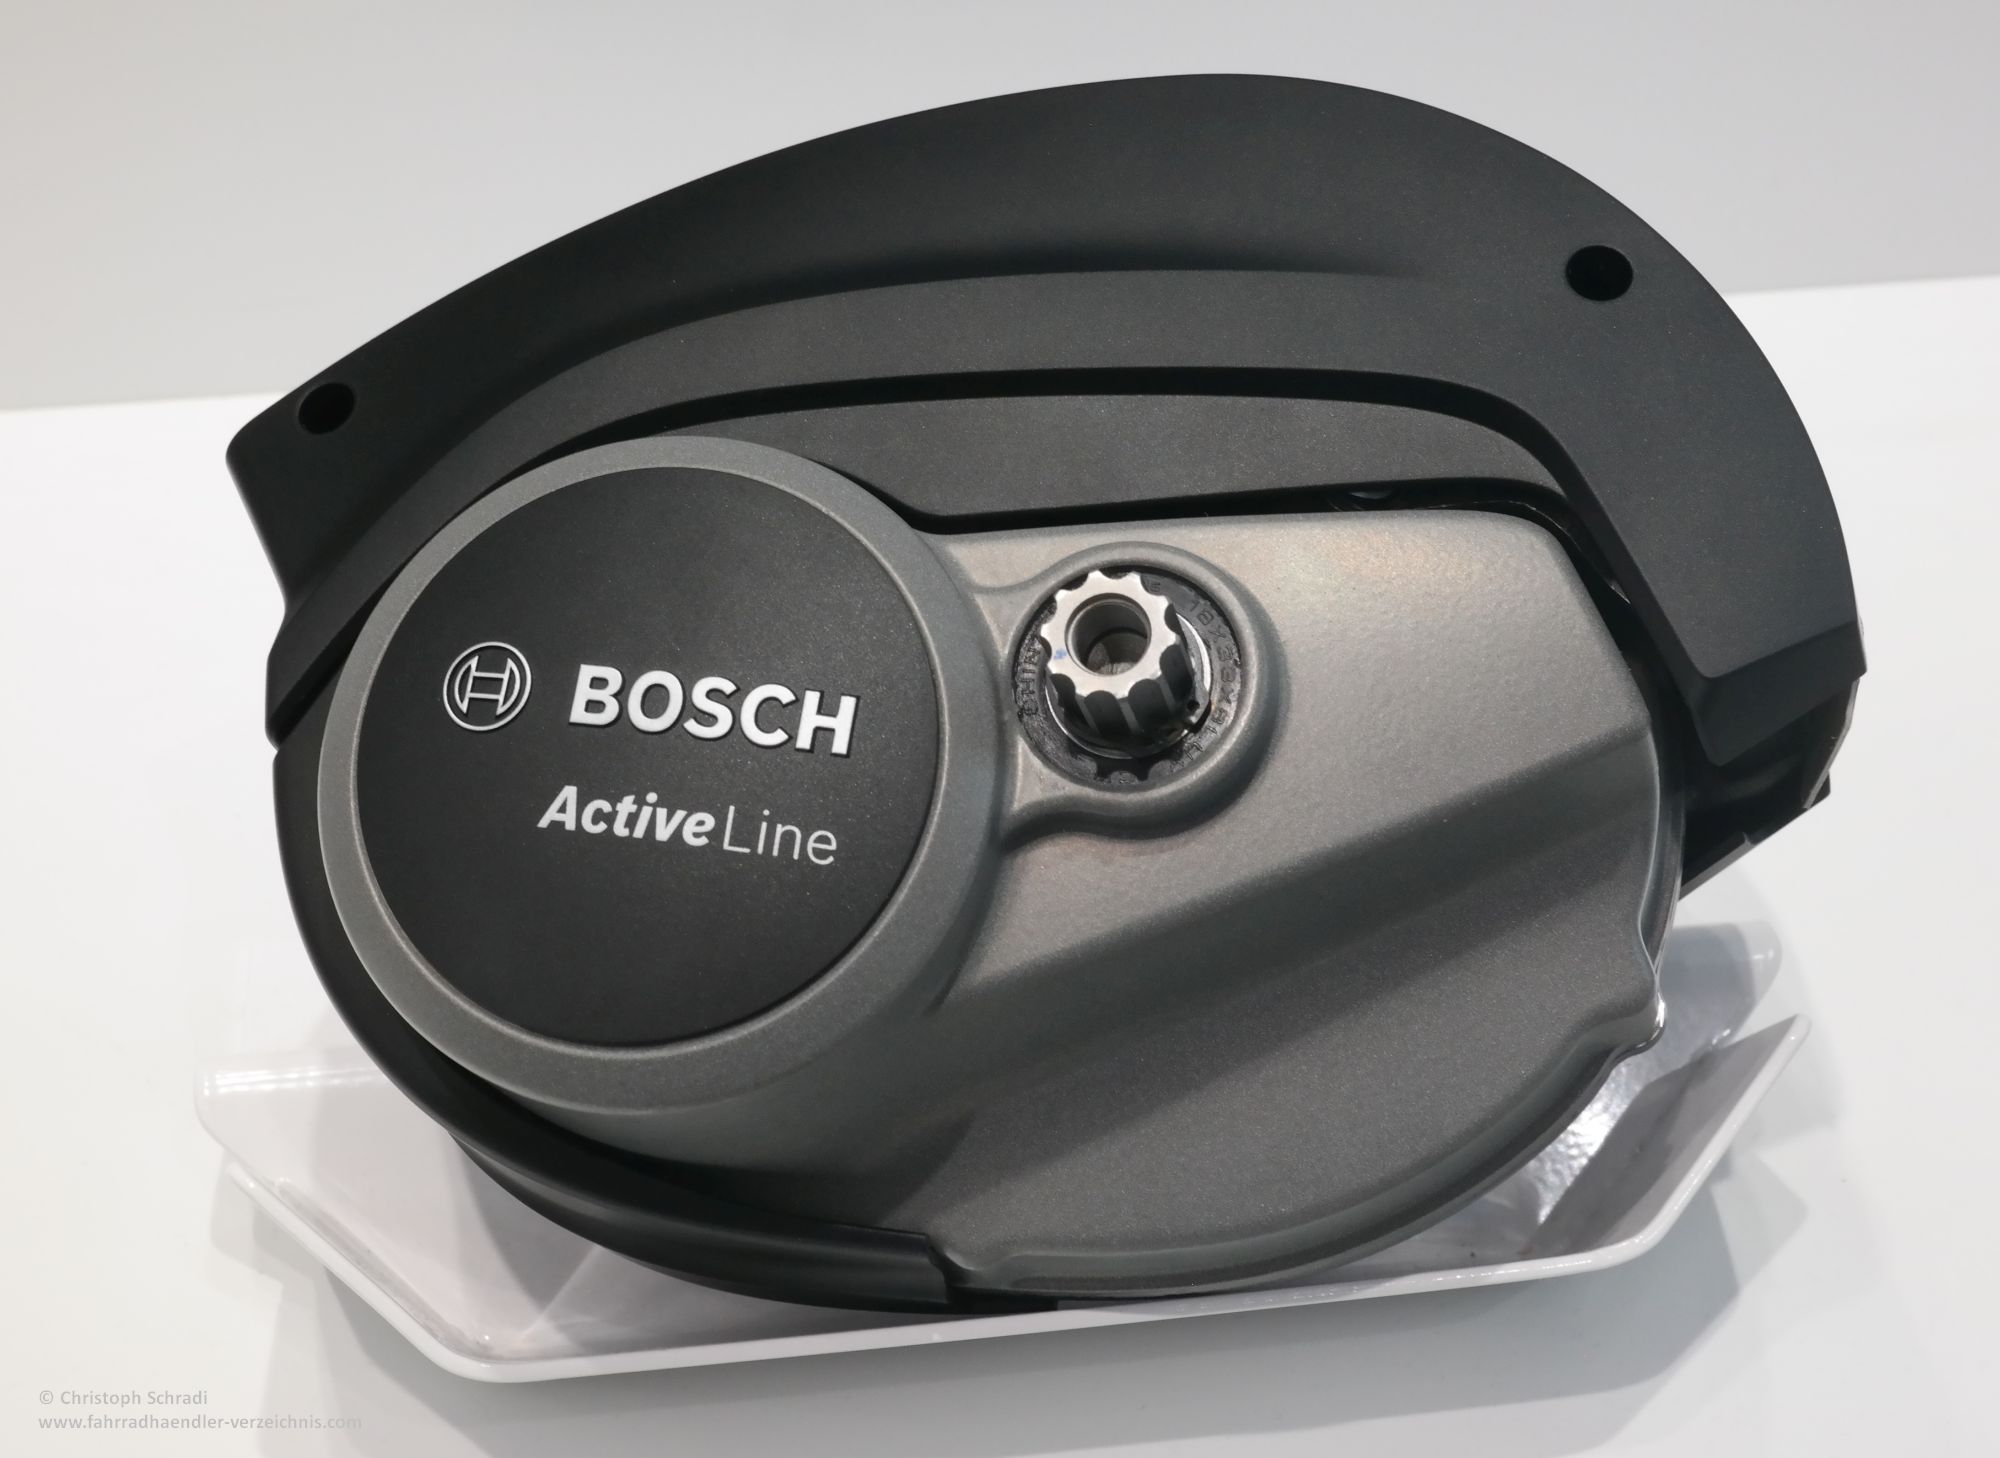 Bosch stellt spannende E-Bike Neuheiten für 2018 vor